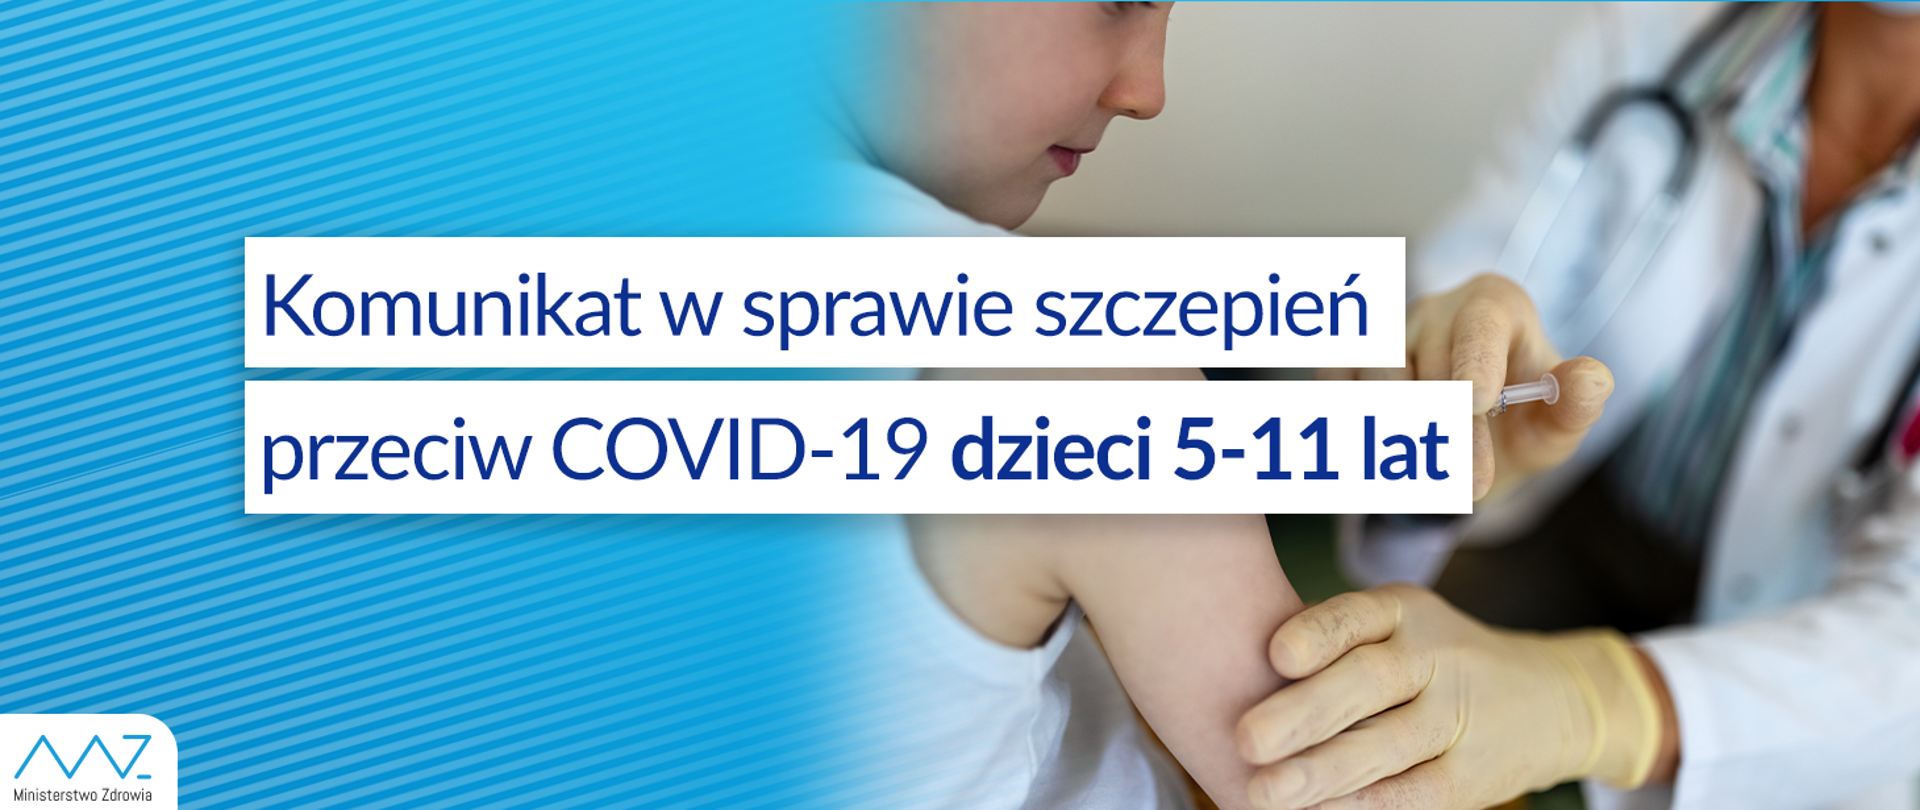 Komunikat w sprawie szczepień przeciw COVID-19